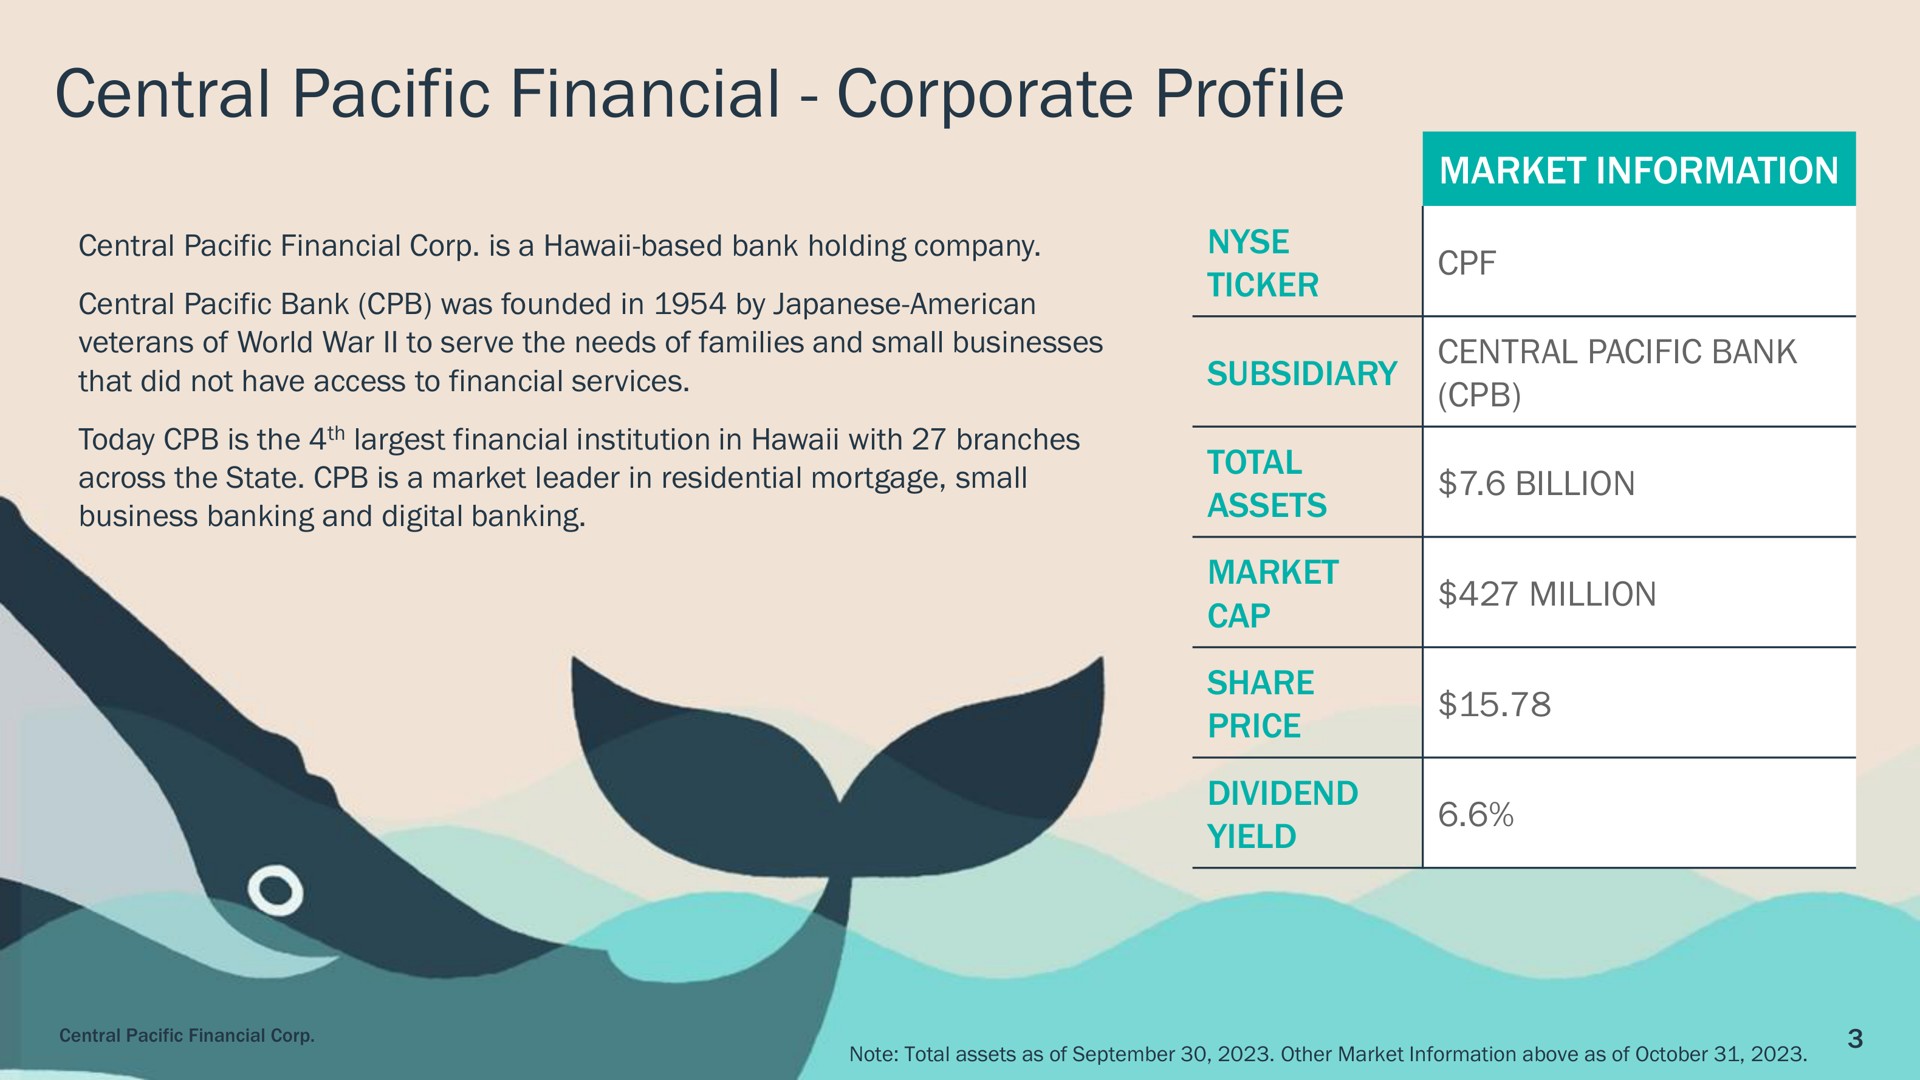 central pacific financial corporate profile | Central Pacific Financial